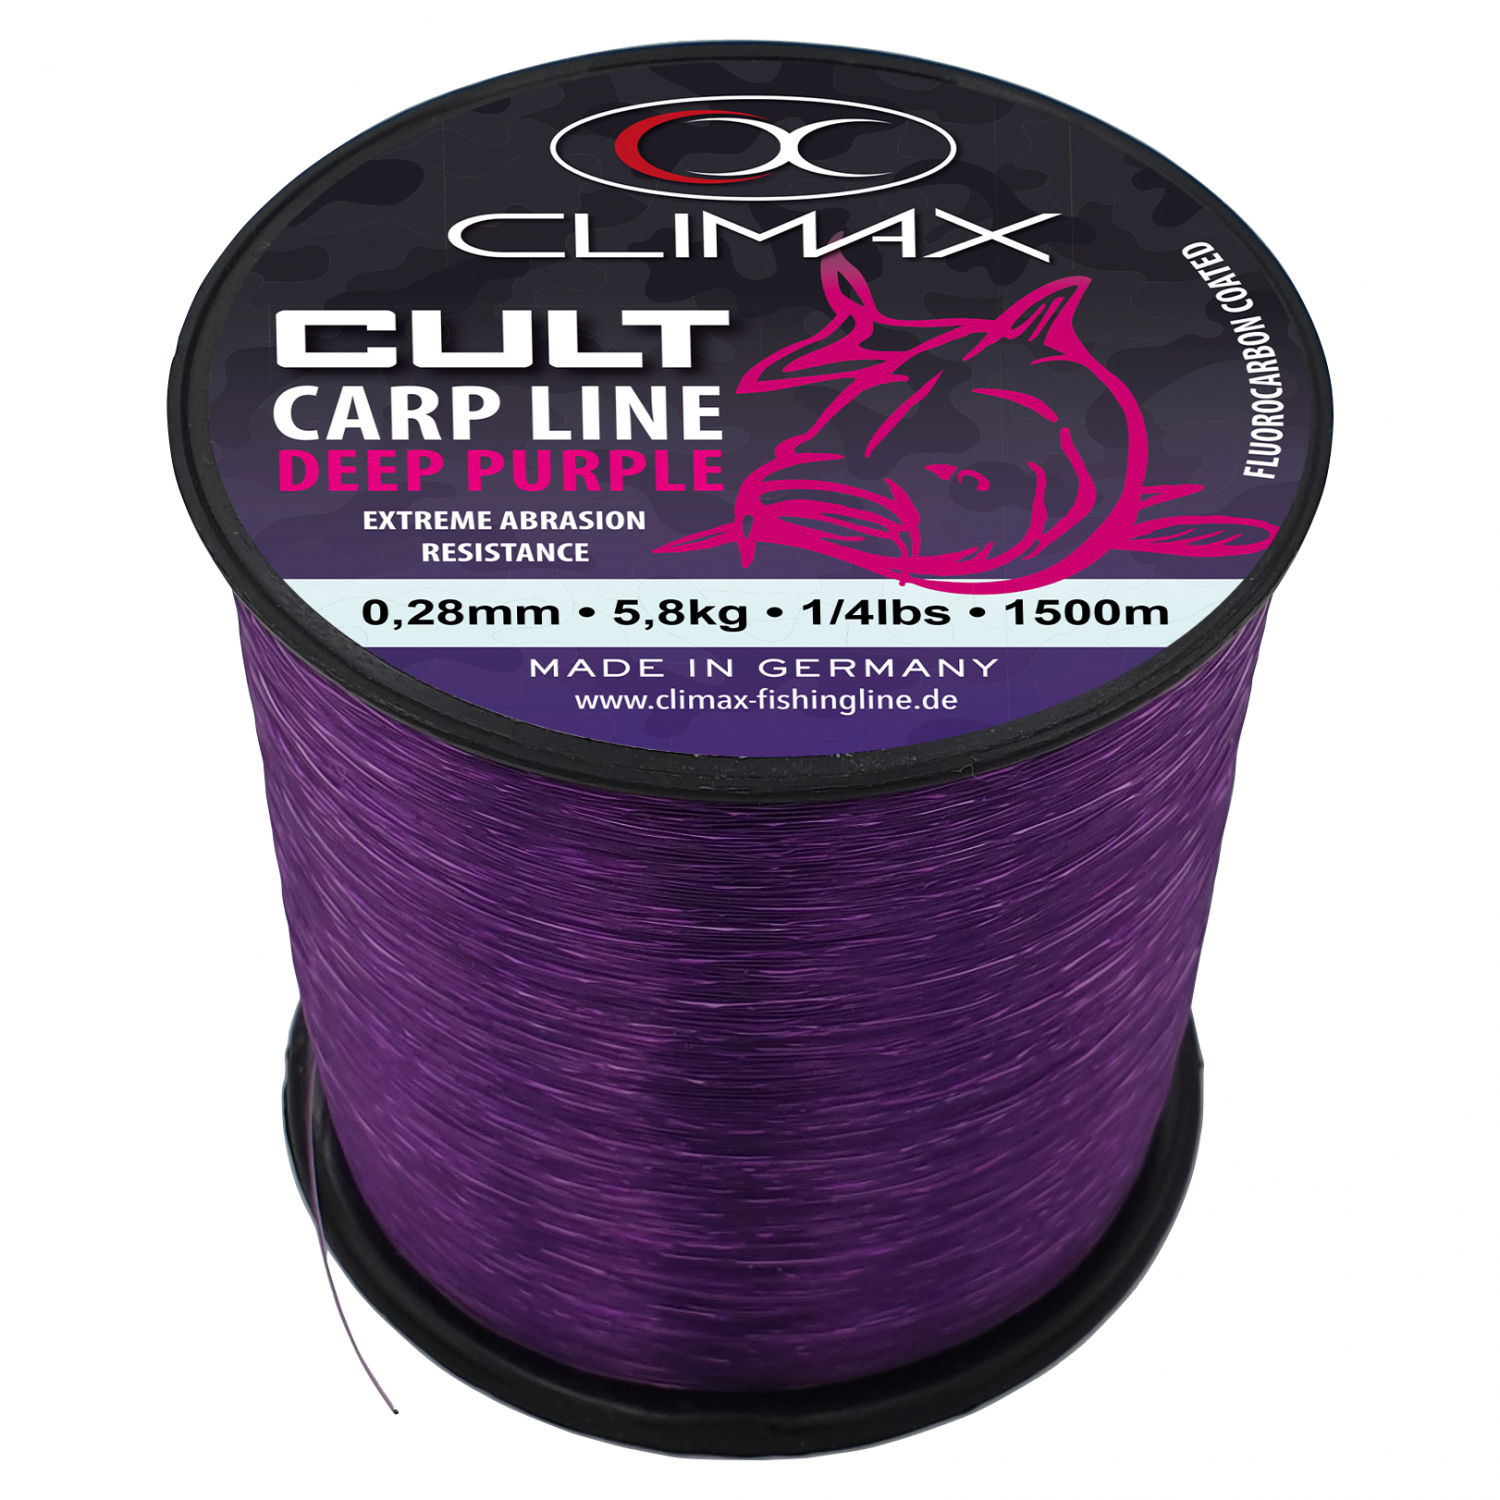  AKVTO Purple Monofilament Fish Wire - Nylon